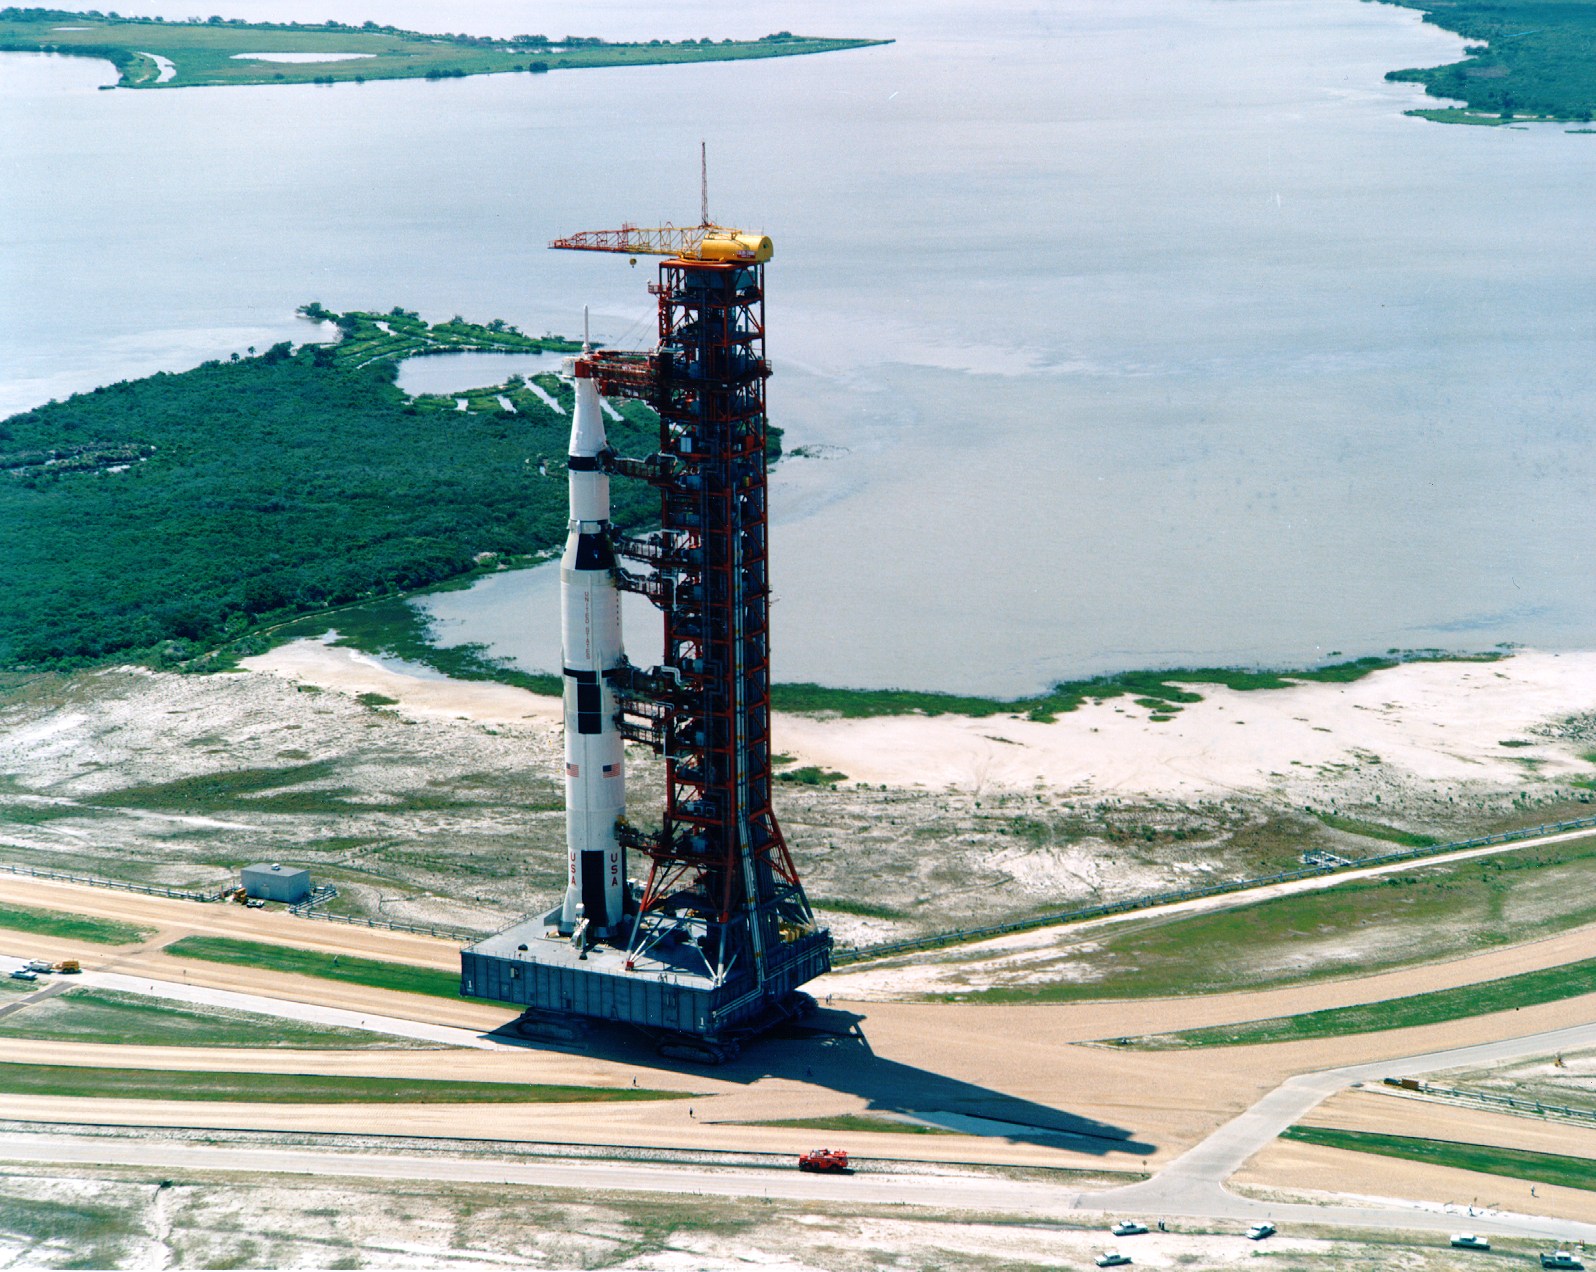 Rollout of Apollo 11